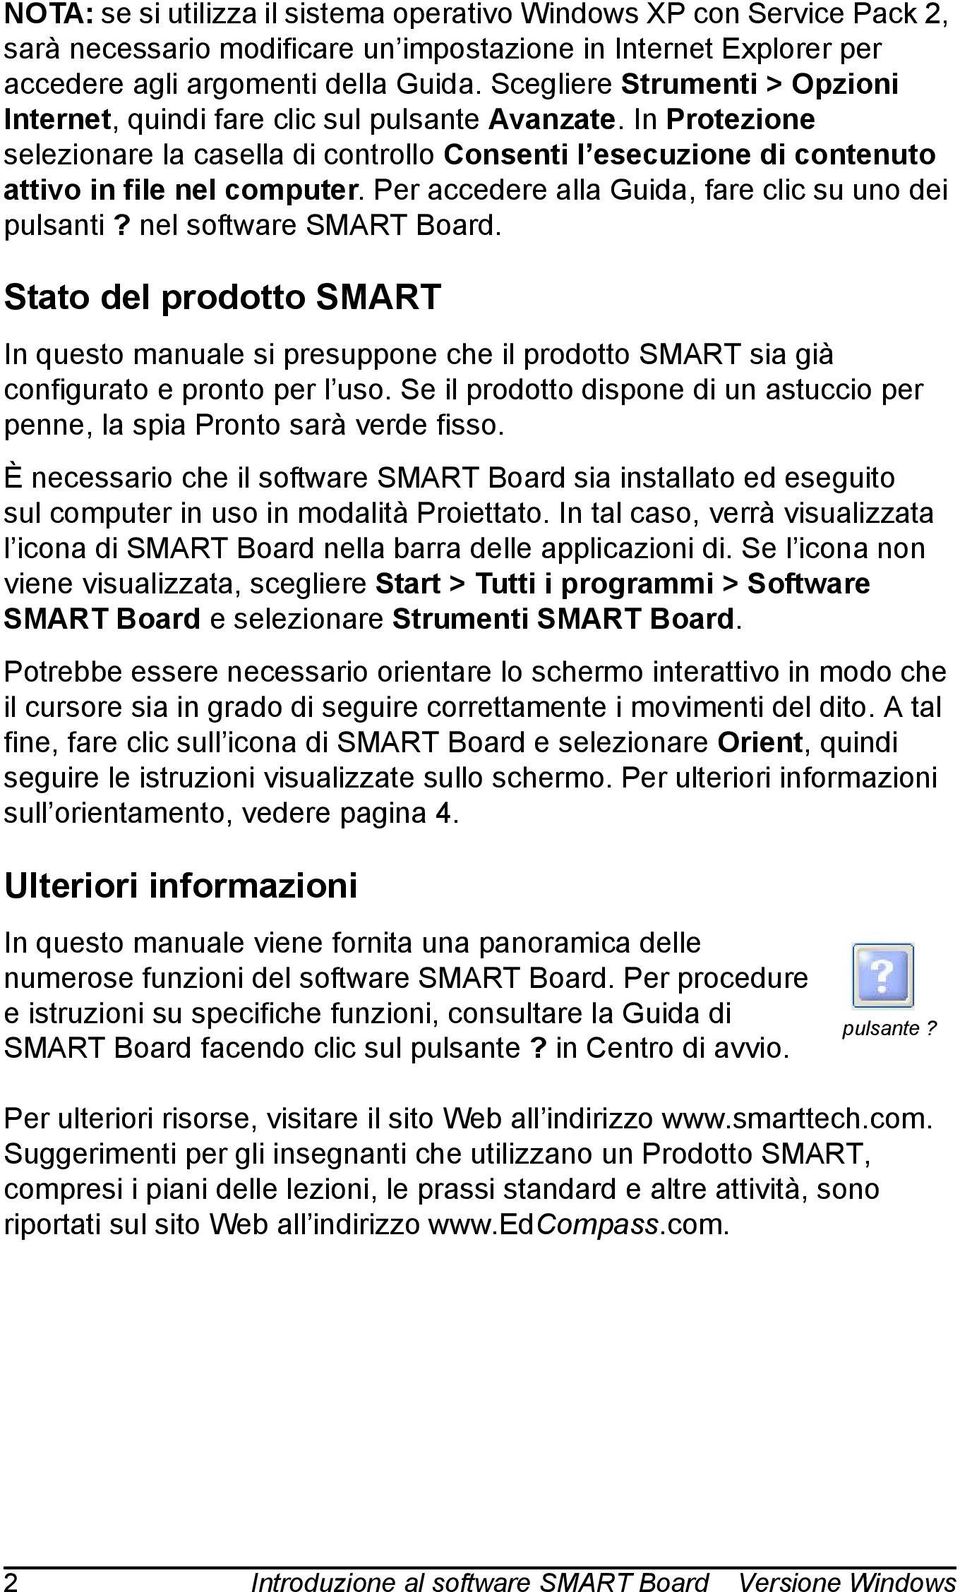 Per accedere alla Guida, fare clic su uno dei pulsanti? nel software SMART Board. Stato del prodotto SMART In questo manuale si presuppone che il prodotto SMART sia già configurato e pronto per l uso.